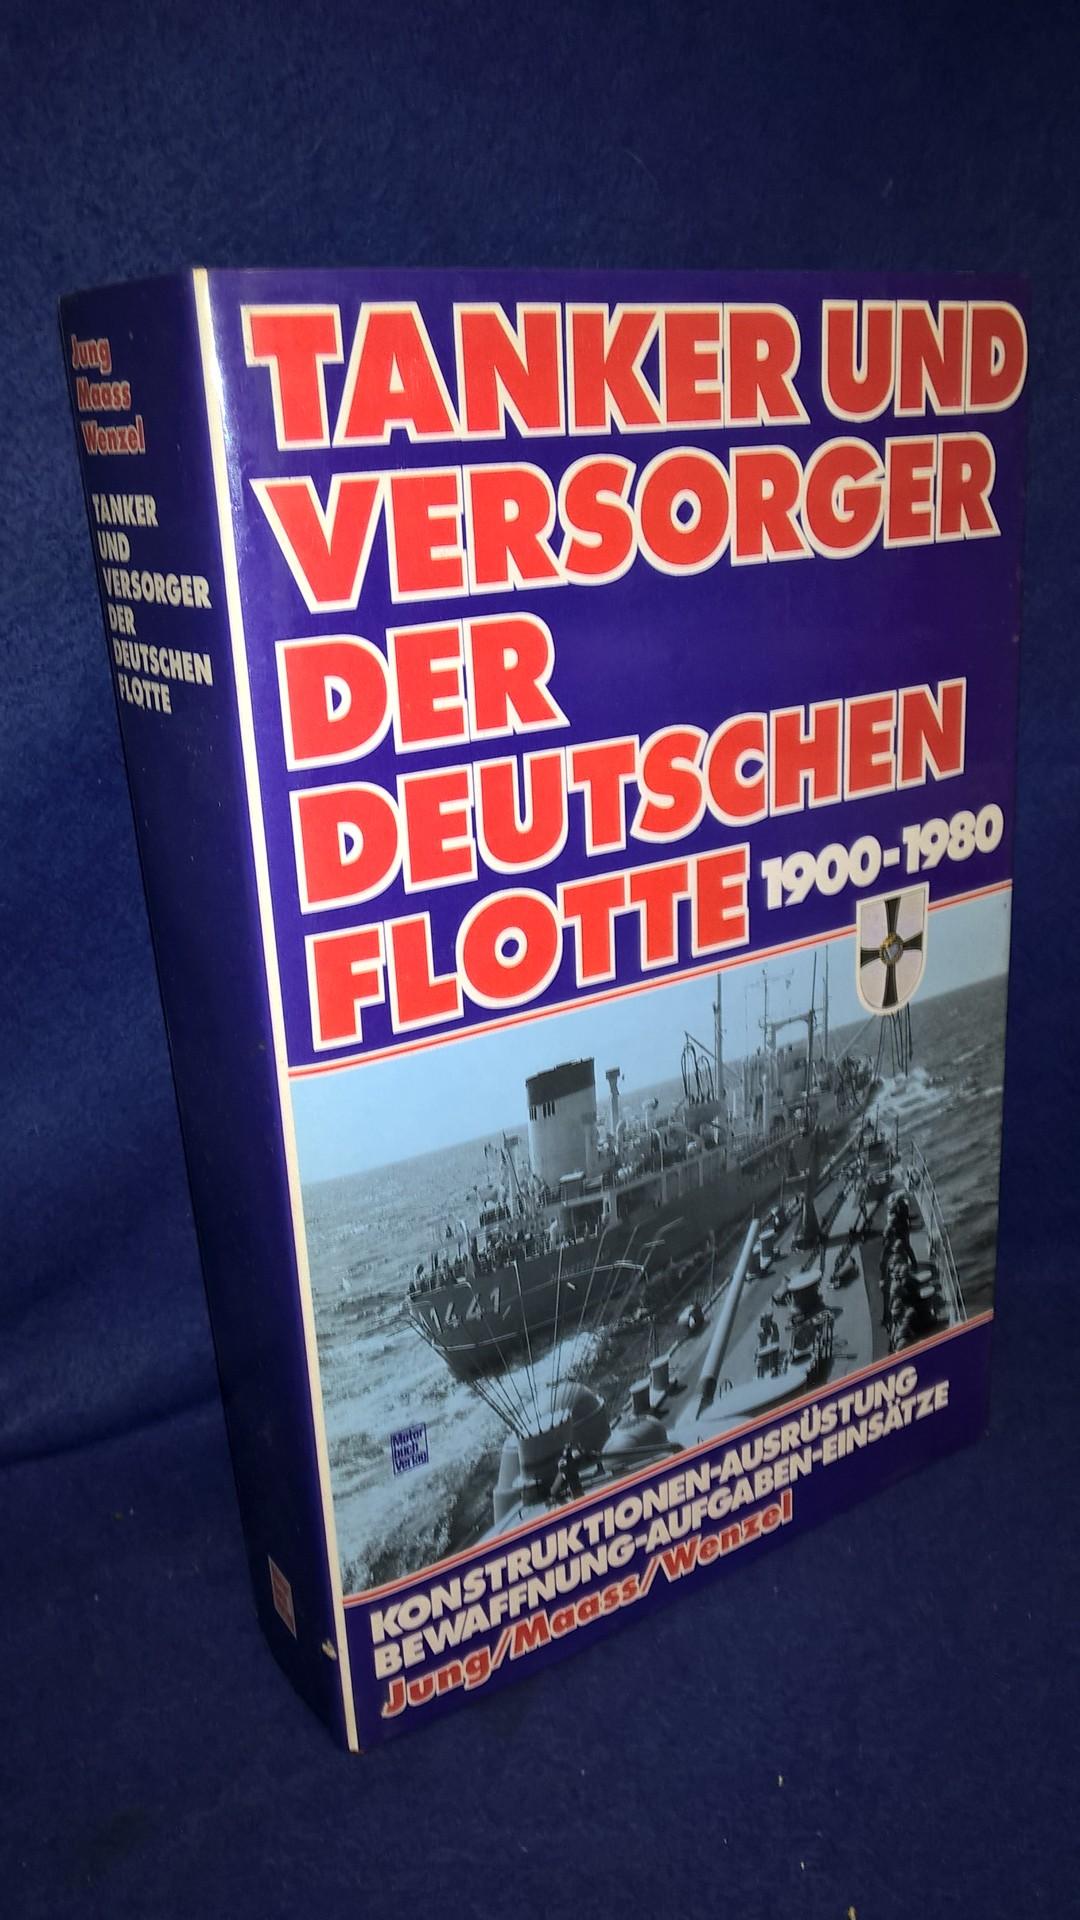 Tanker und Versorger der deutschen Flotte 1900 -1980.Ihre Konstruktionen,Ausrüstung,Bewaffnung,Aufgaben und Einsätze.